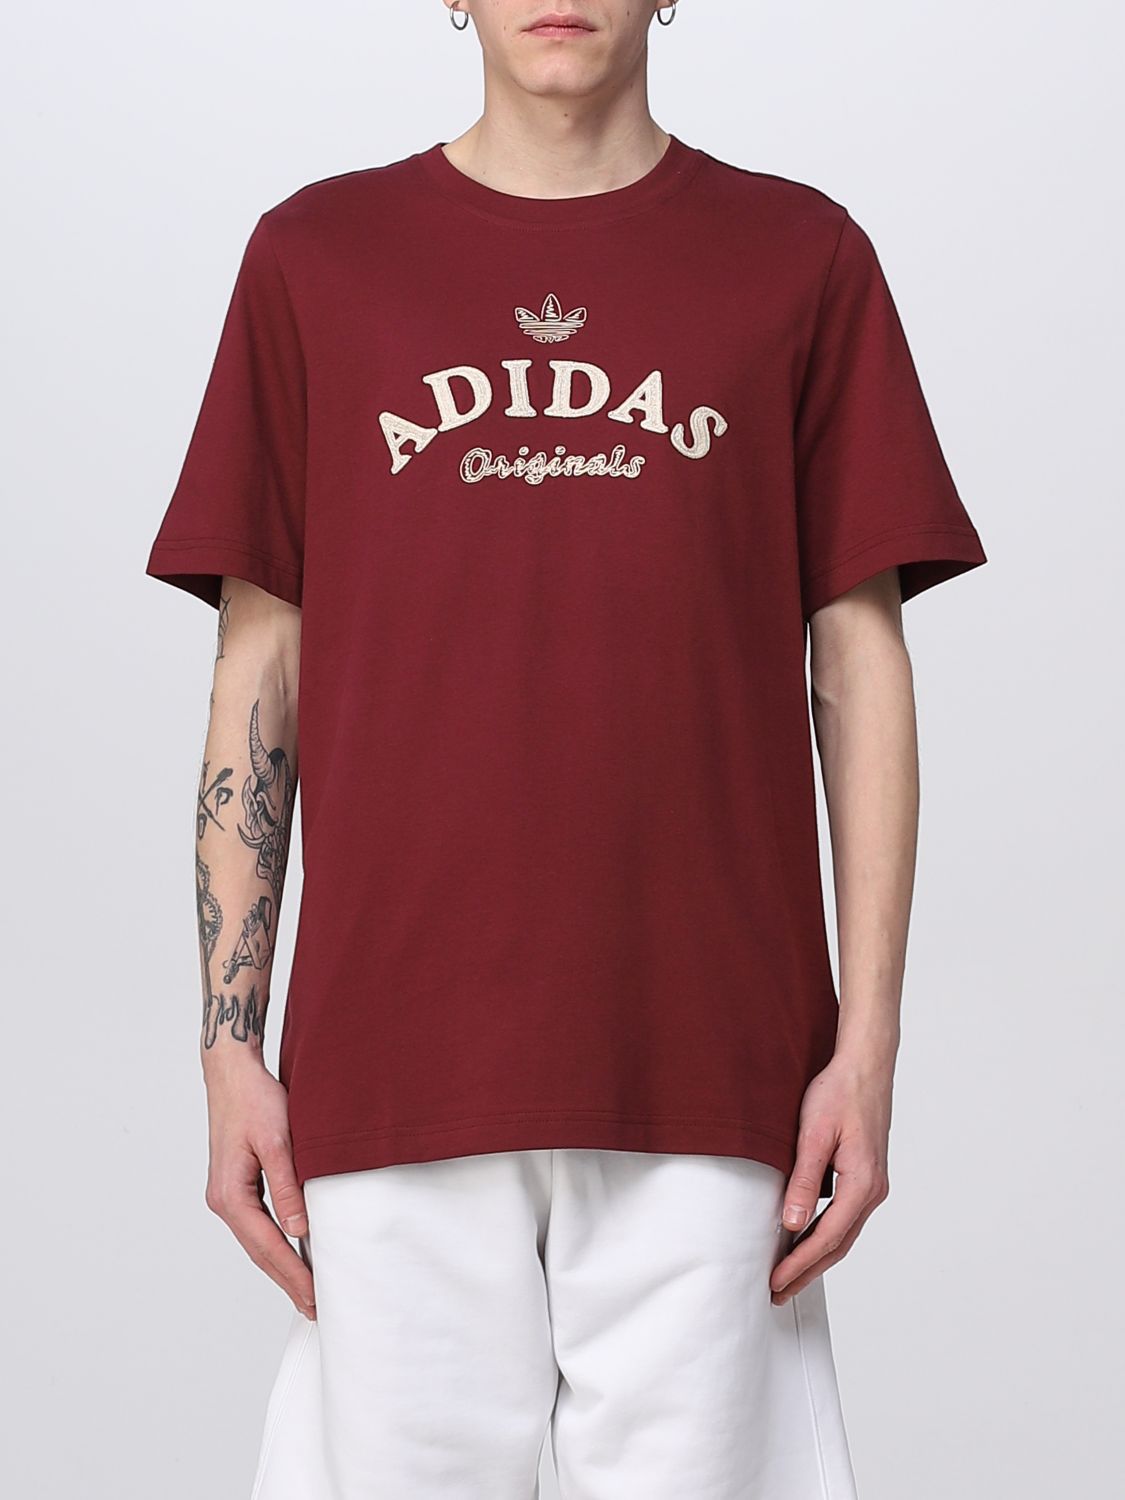 ADIDAS ORIGINALS: Camiseta para hombre, Granate Camiseta Adidas IC5763 en línea en GIGLIO.COM